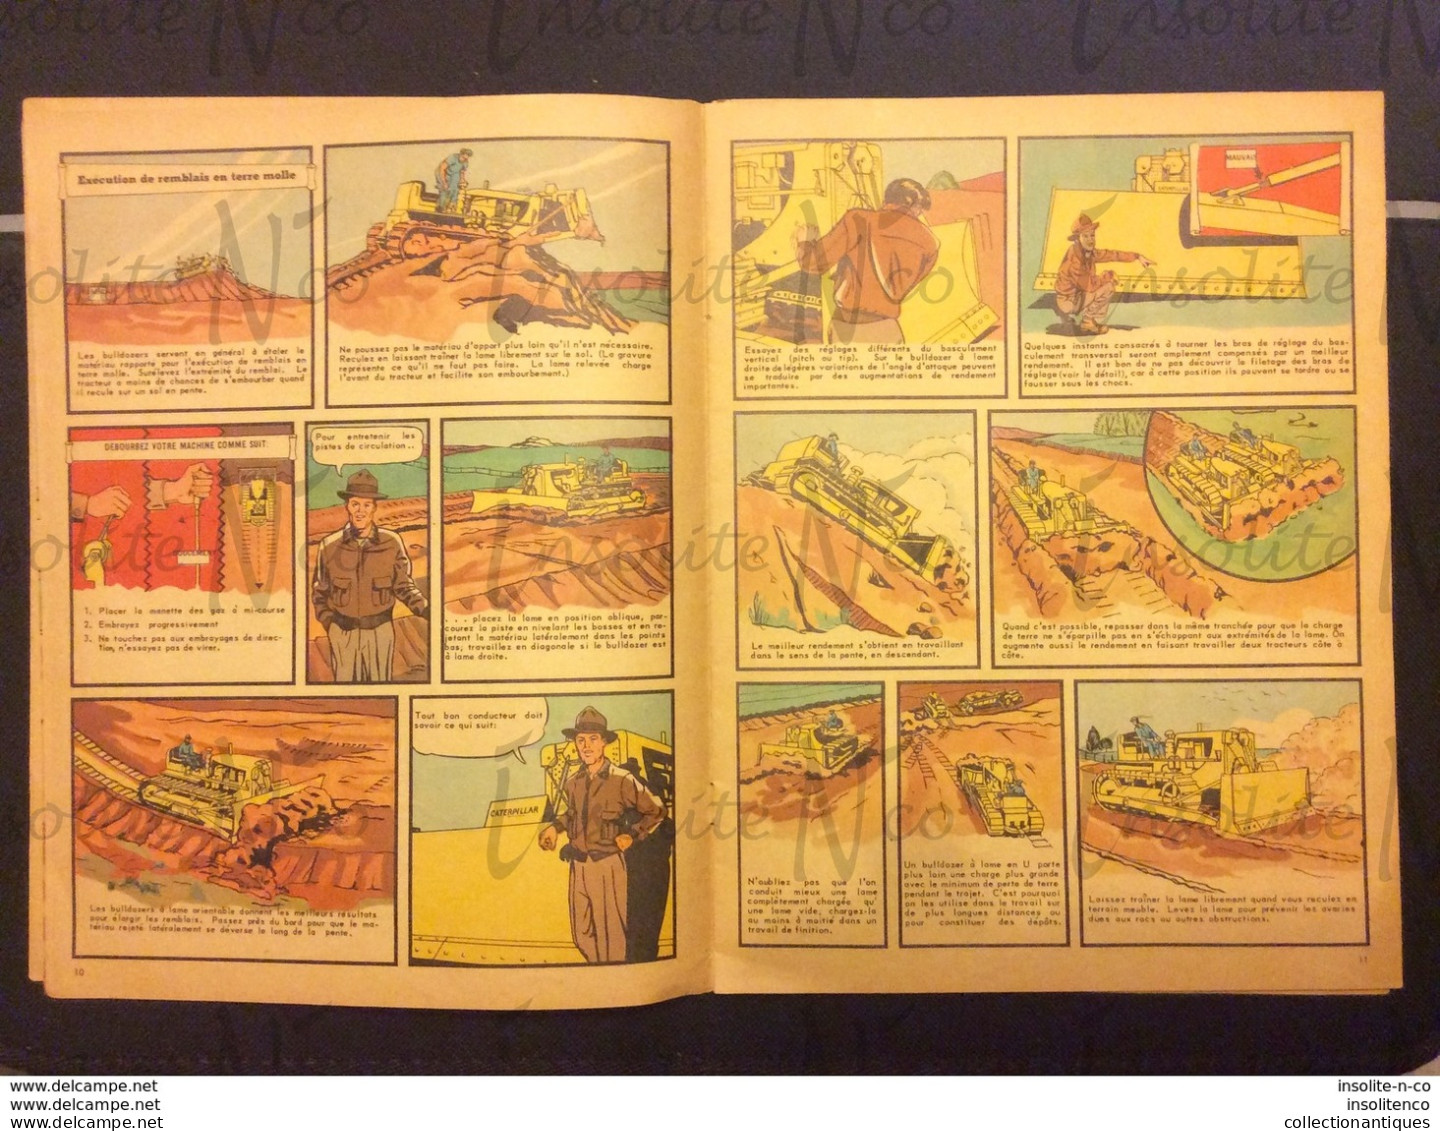 Très rare guide pour le conducteur de tracteurs, scrapers, rippers, bulldozers Caterpillar 1950 en BD en français